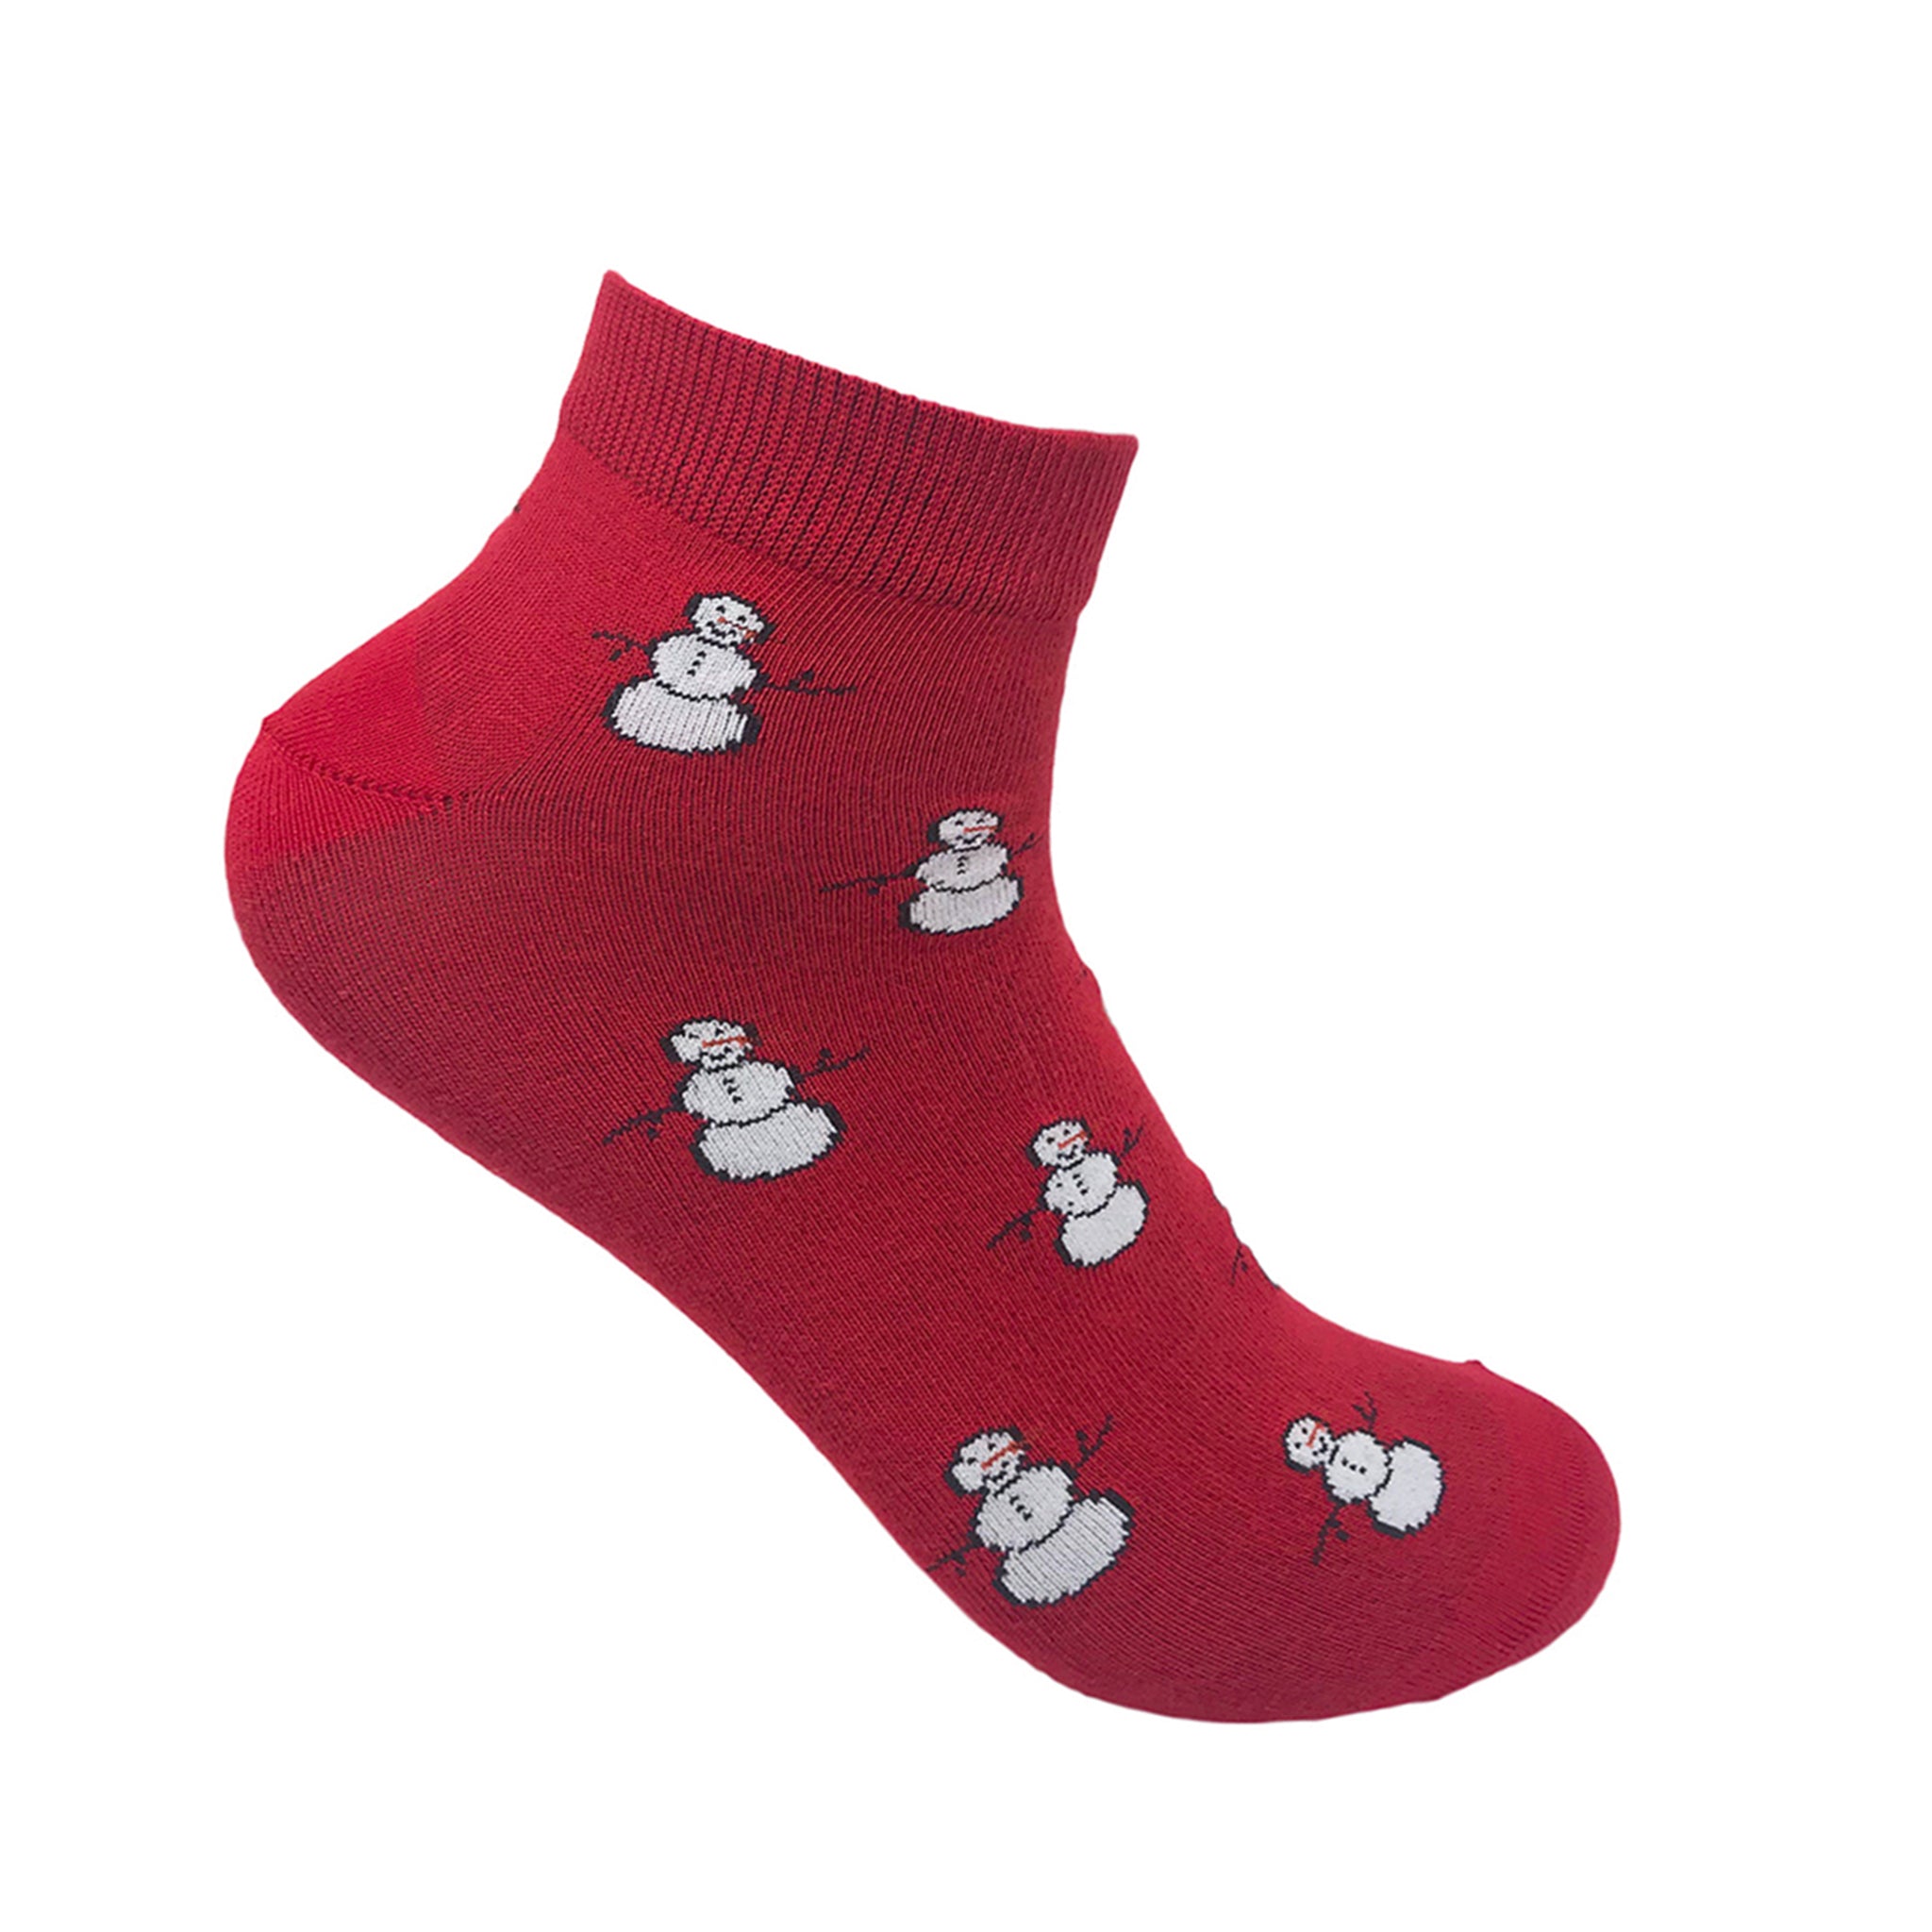 Mr. Snowman Ankle Socks For Men